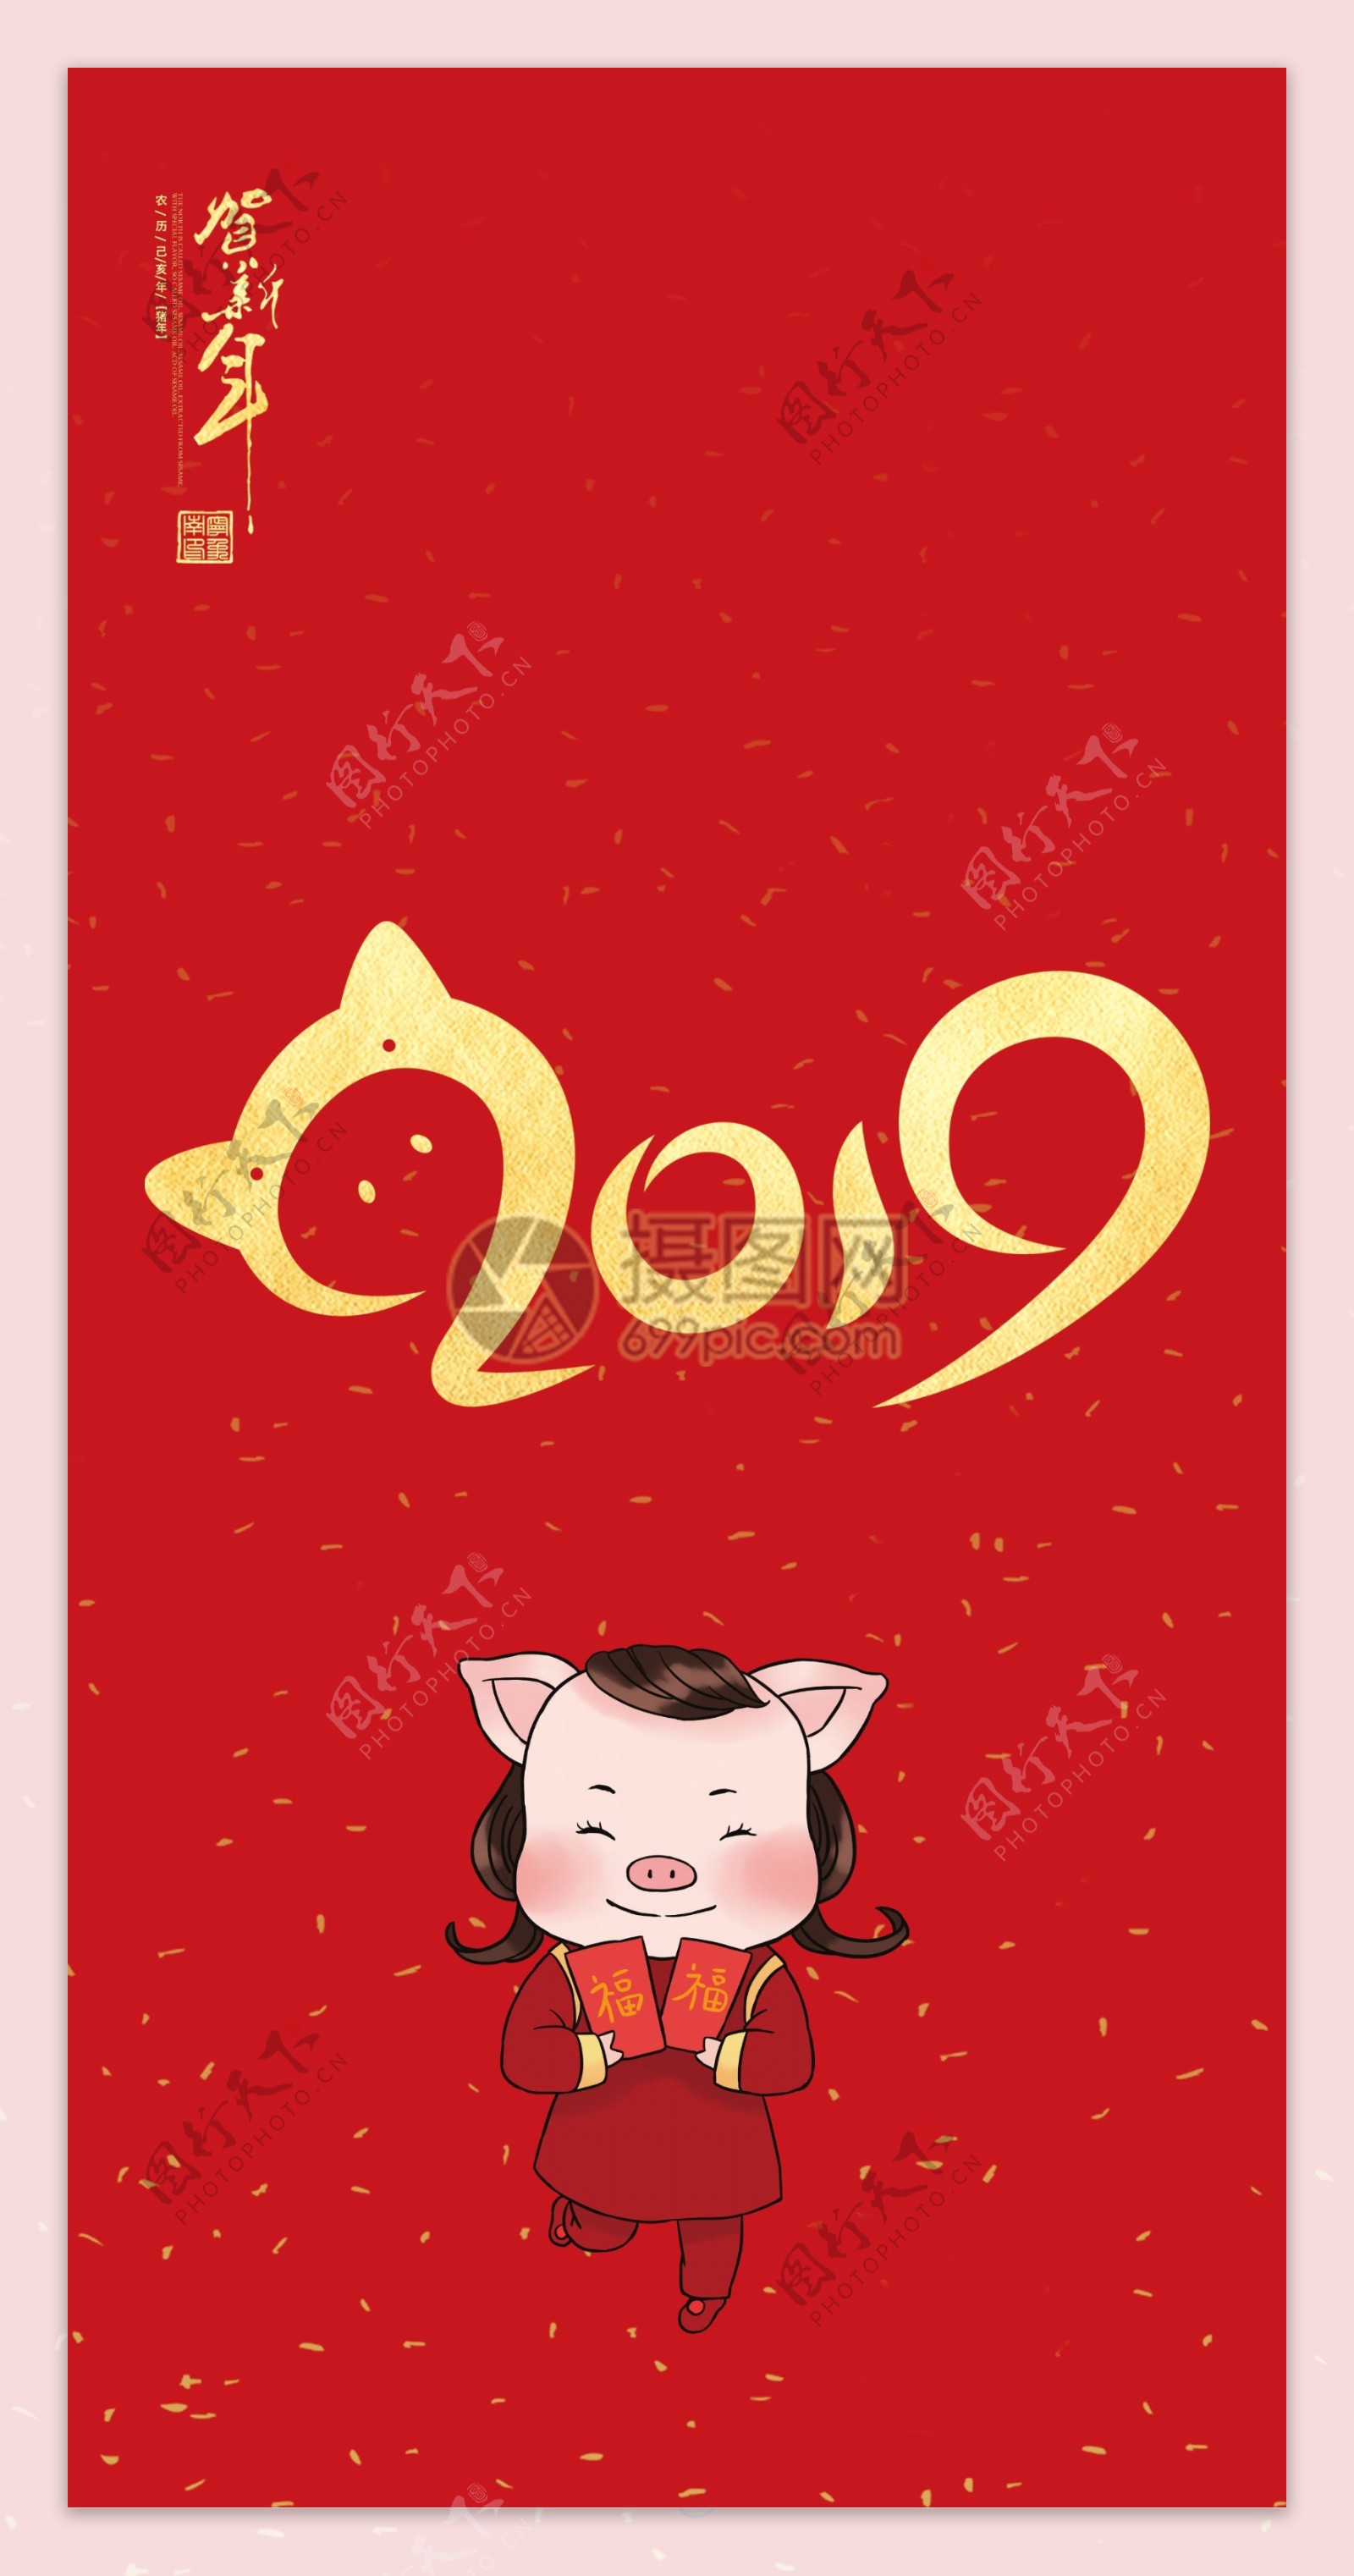 2019中国红猪年红包设计